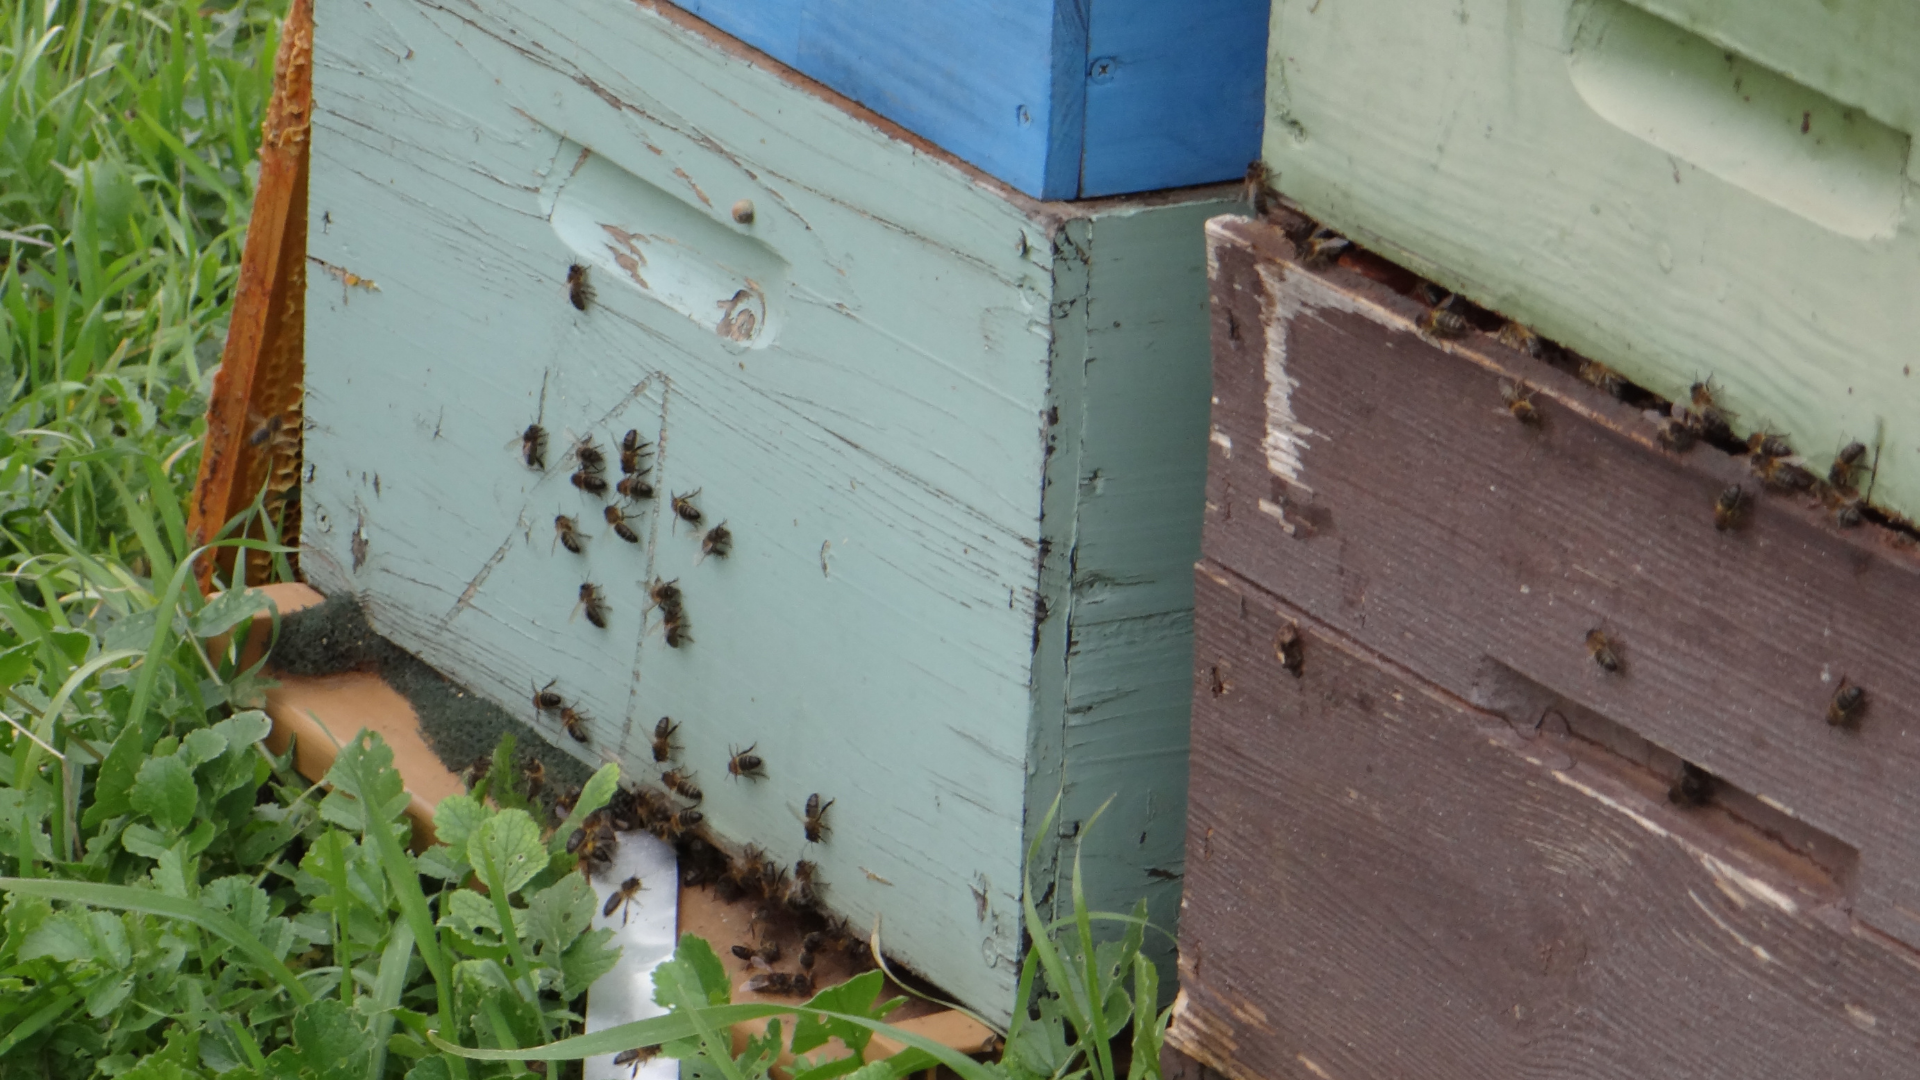 Lire la suite à propos de l’article La peinture des ruches : recette de peinture naturelle